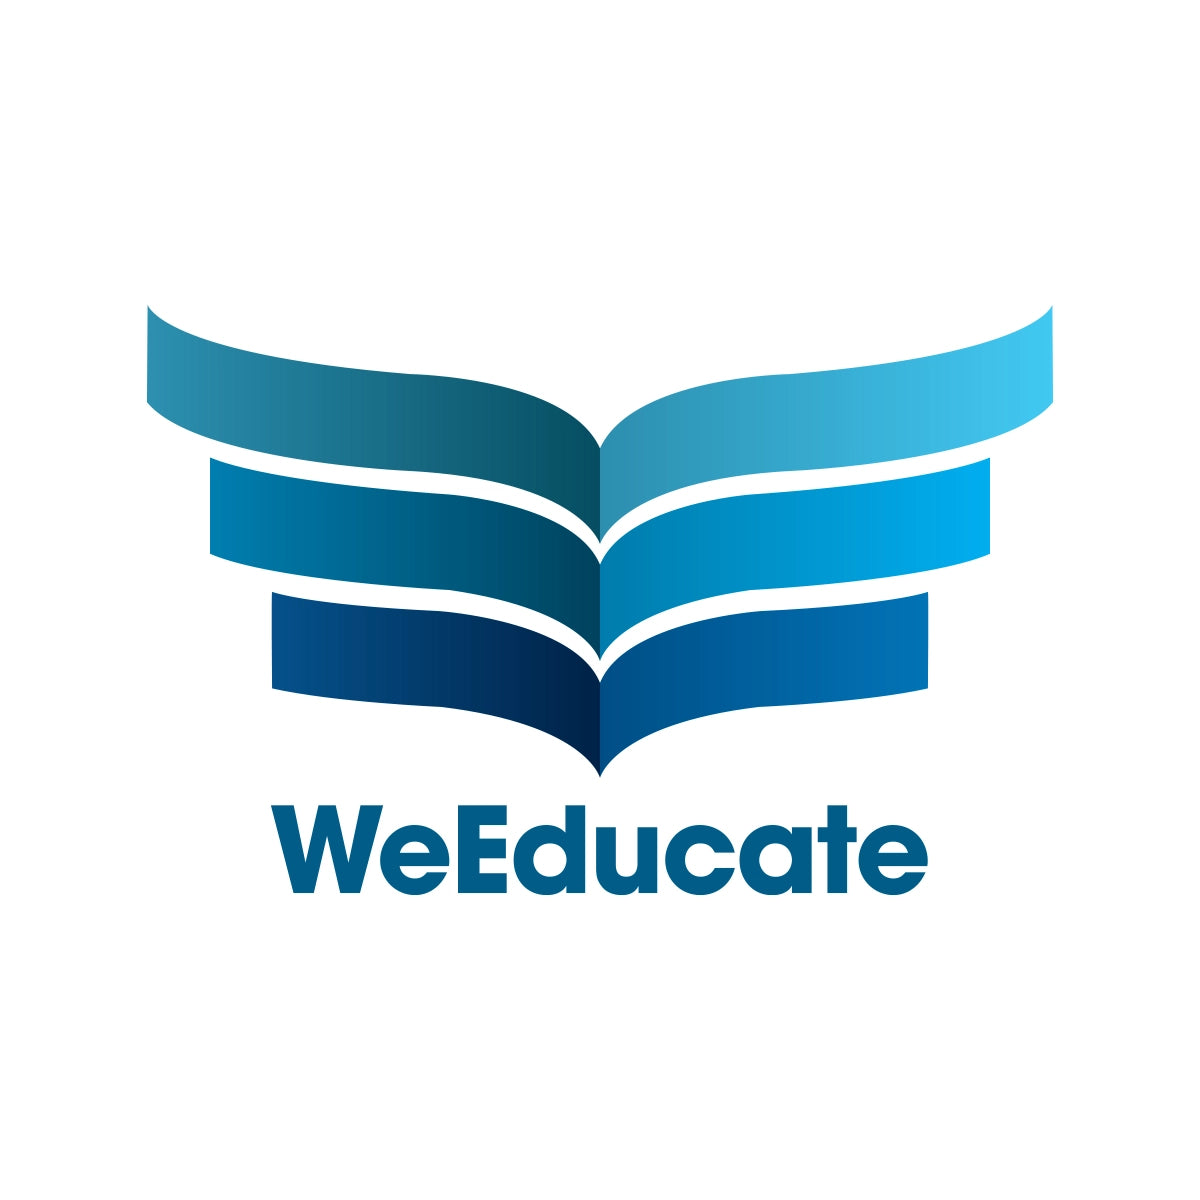 weeducate.com